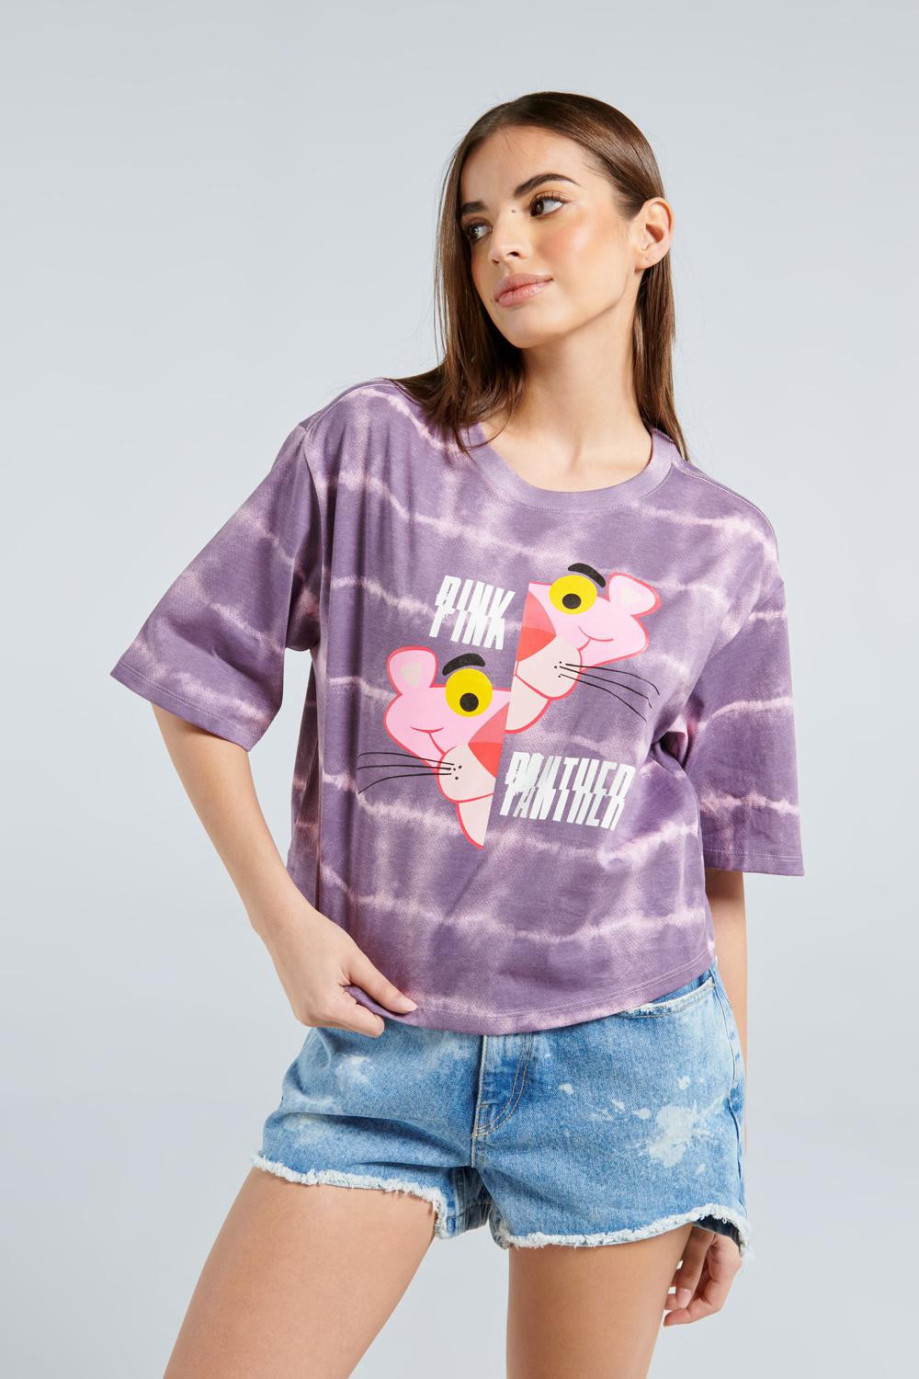 Camiseta crop top lila clara tie dye con diseño de la Pantera Rosa